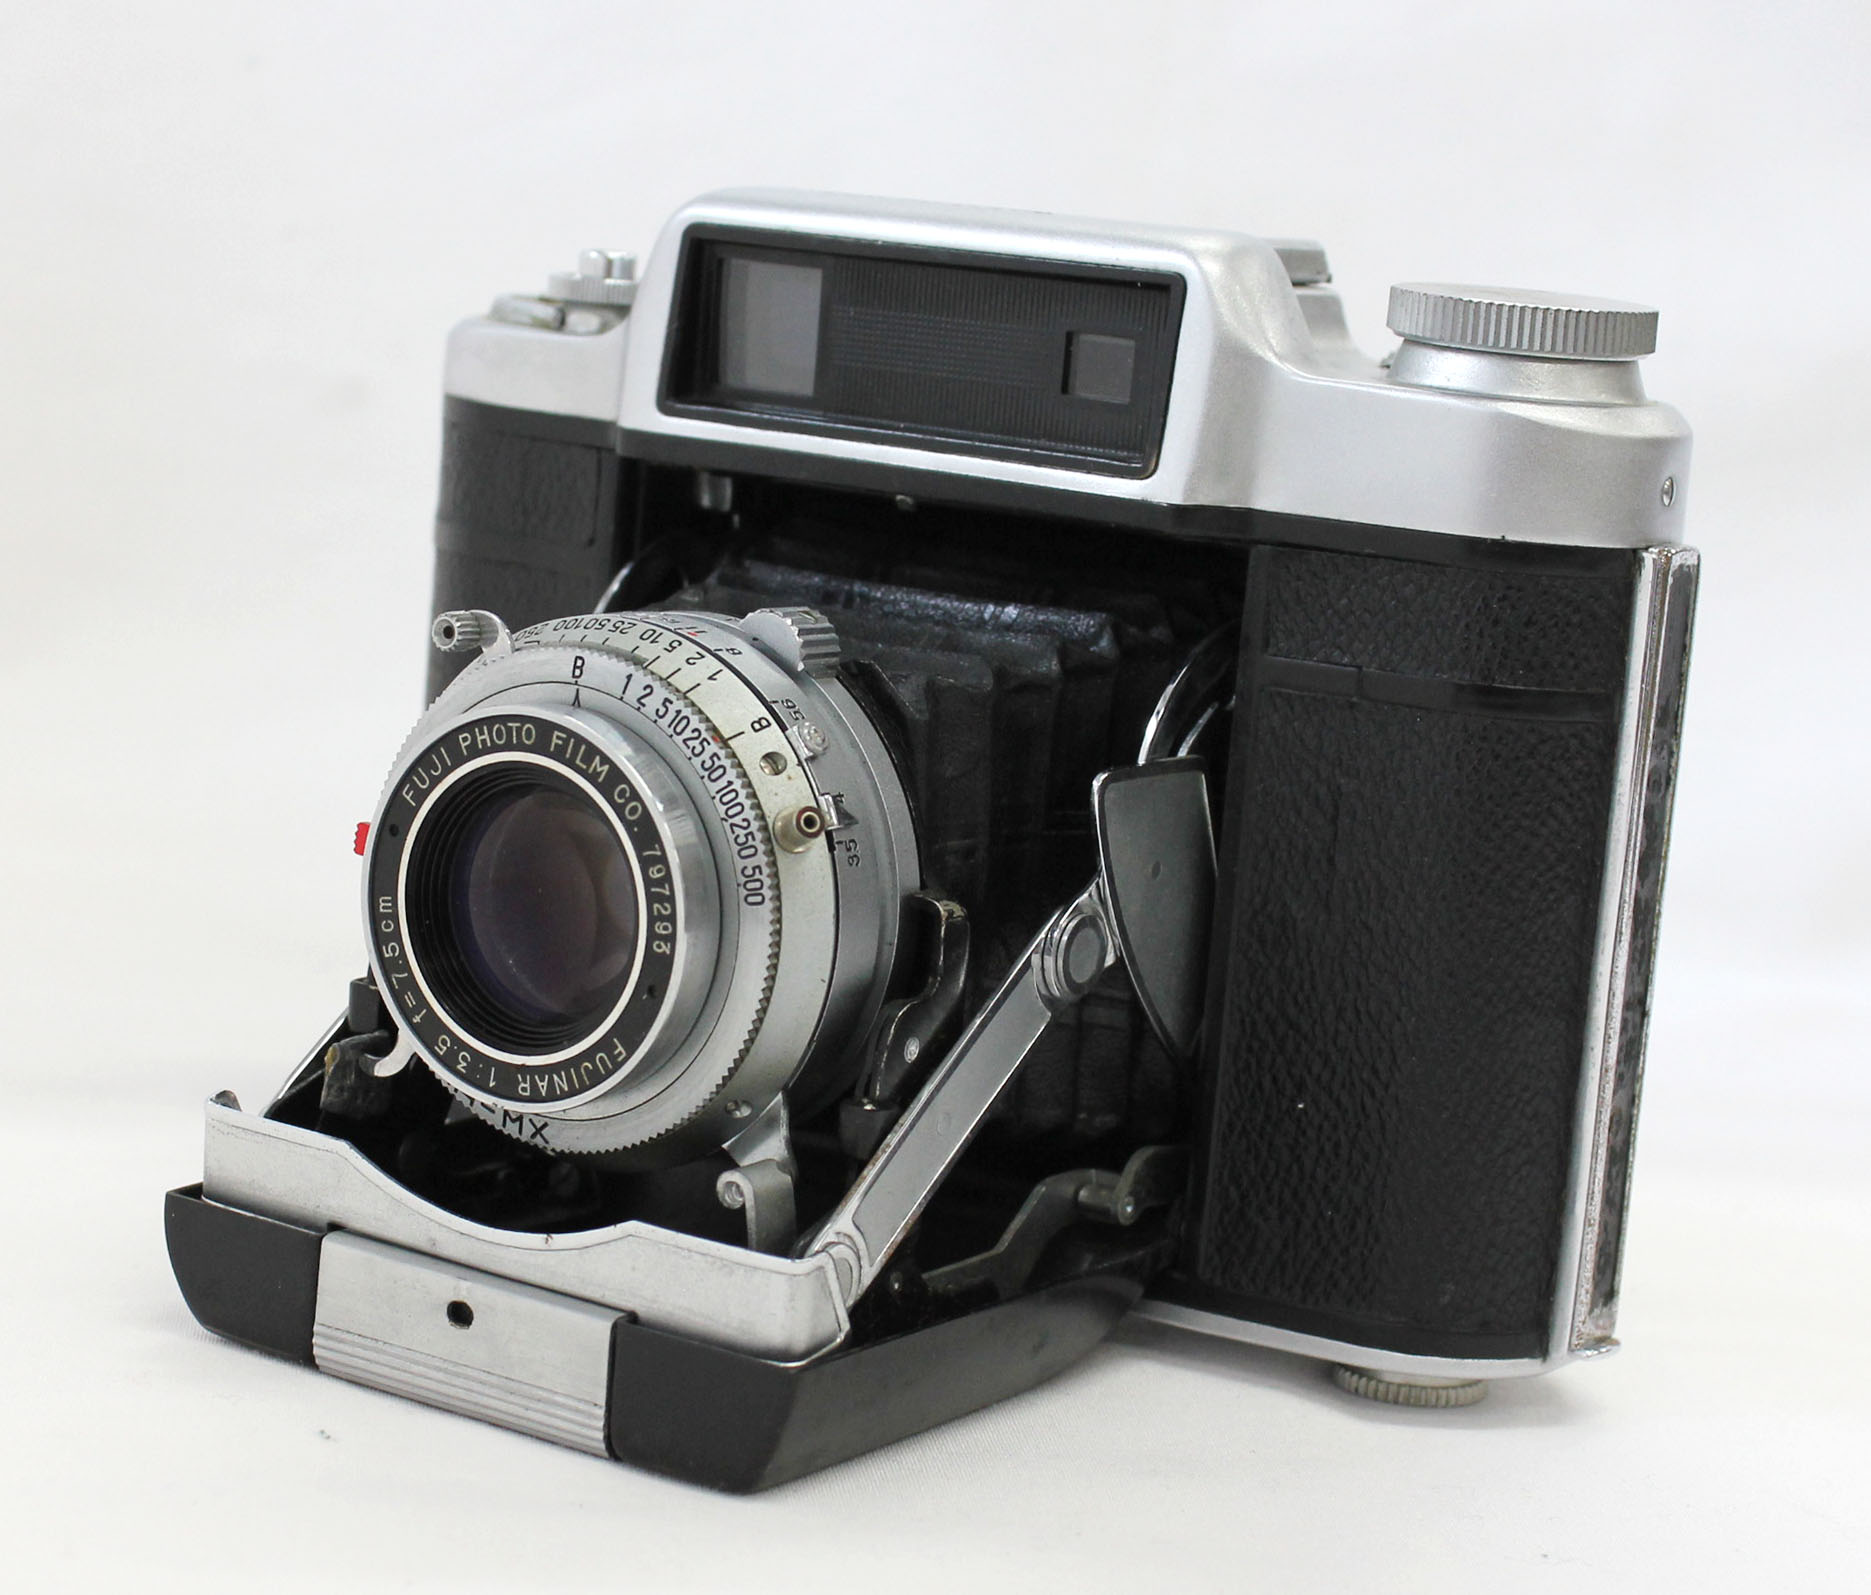 Fuji Super Fujica-6 Six 6x6 Medium Format Film Camera with Fujinar 75mm F/3.5 from Japan Photo 0